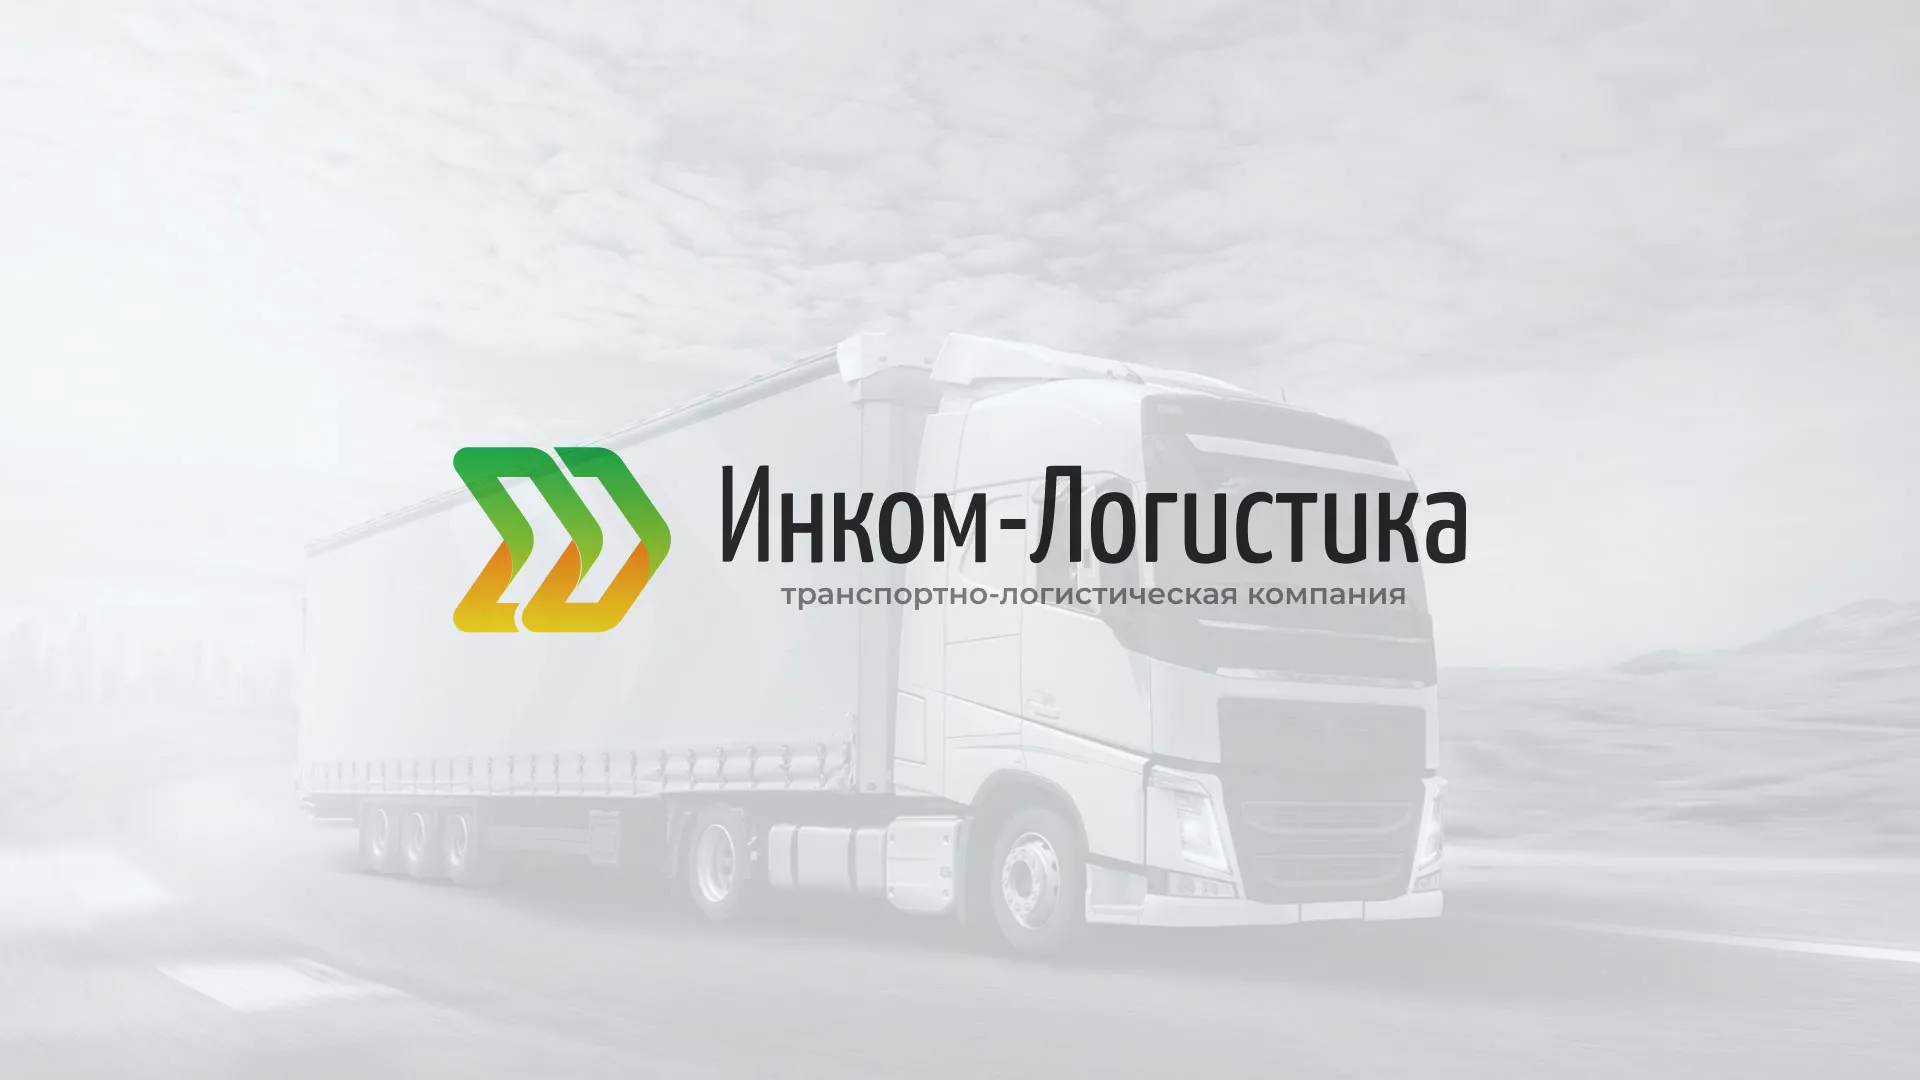 Разработка логотипа и сайта компании «Инком-Логистика» в Гавриловом Посаде